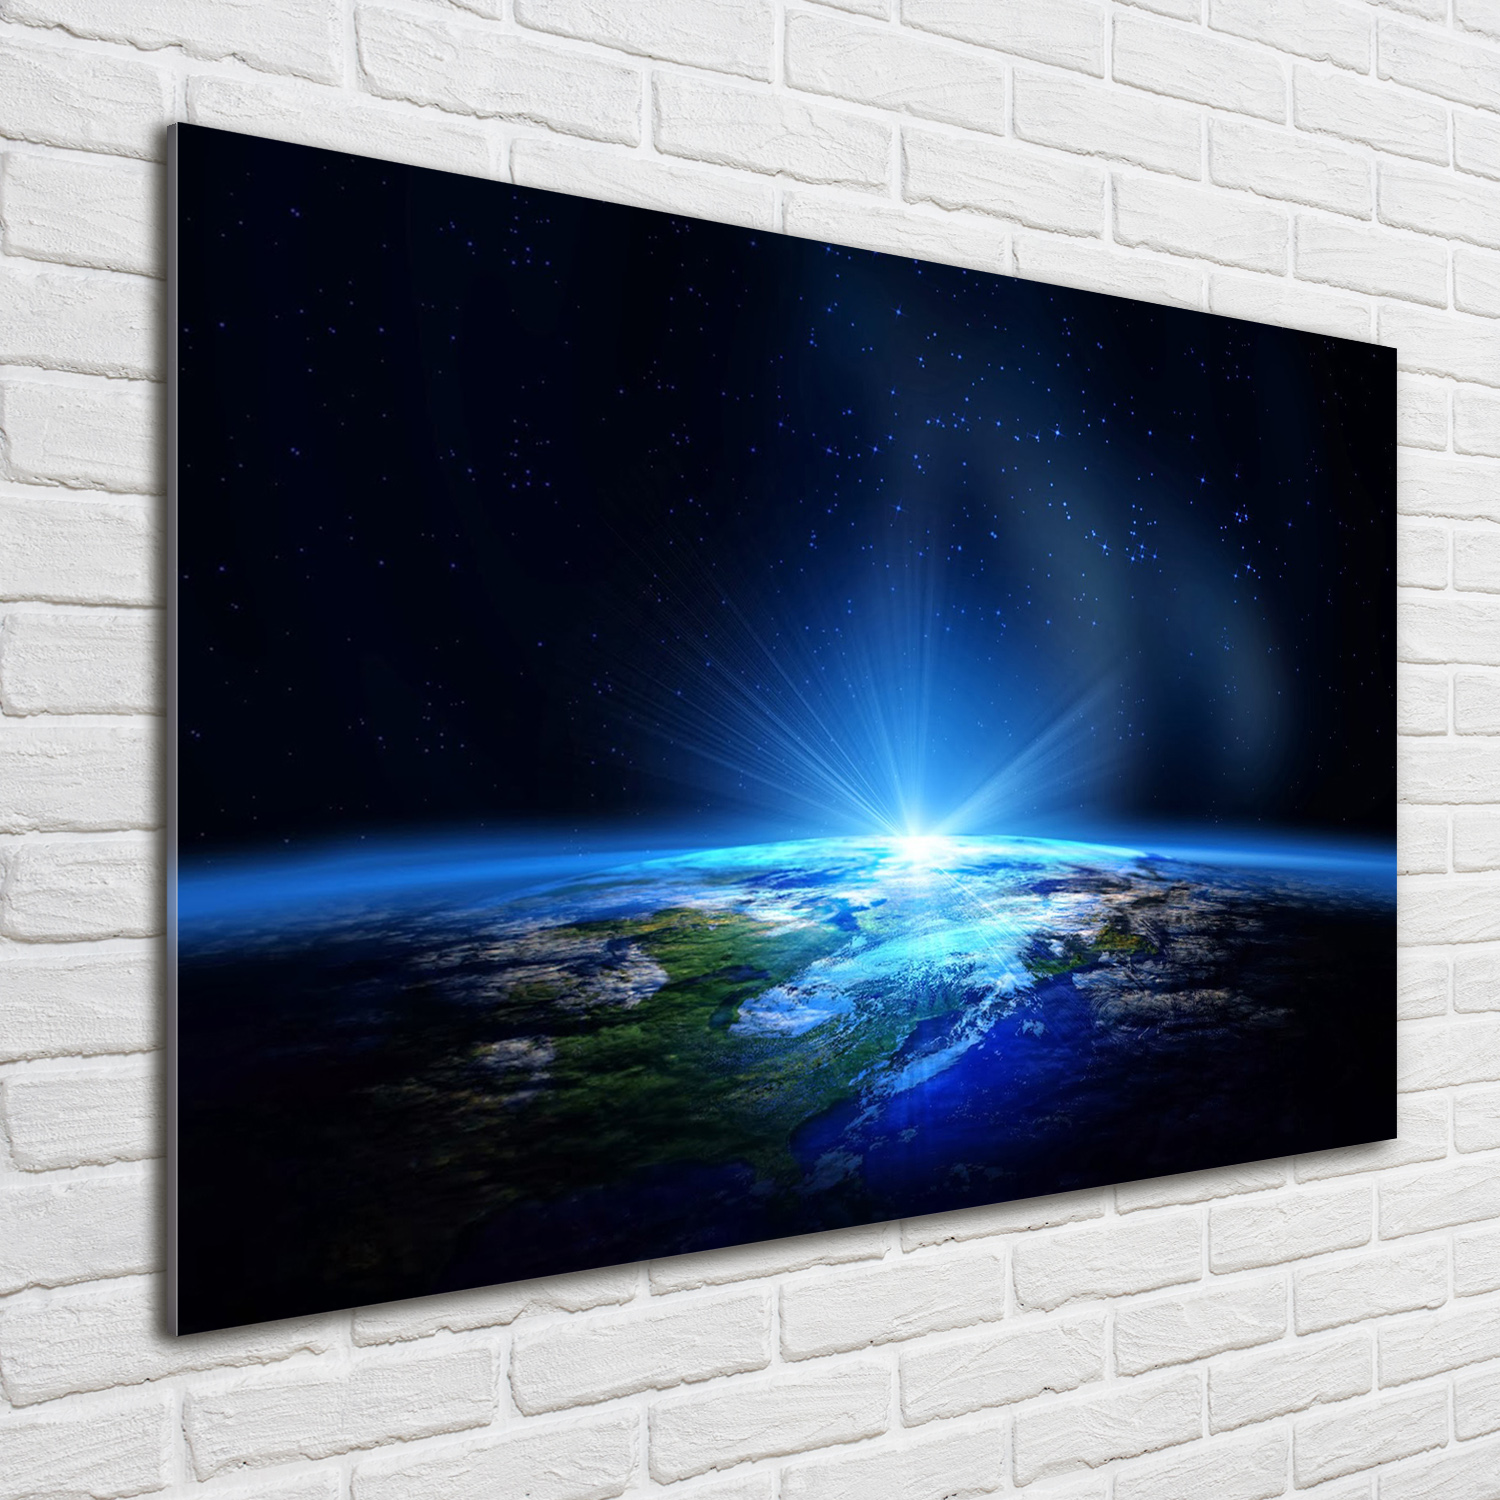 Glas-Bild Wandbilder Druck auf Glas 100x70 Weltall & Science-Fiction Planet Erde